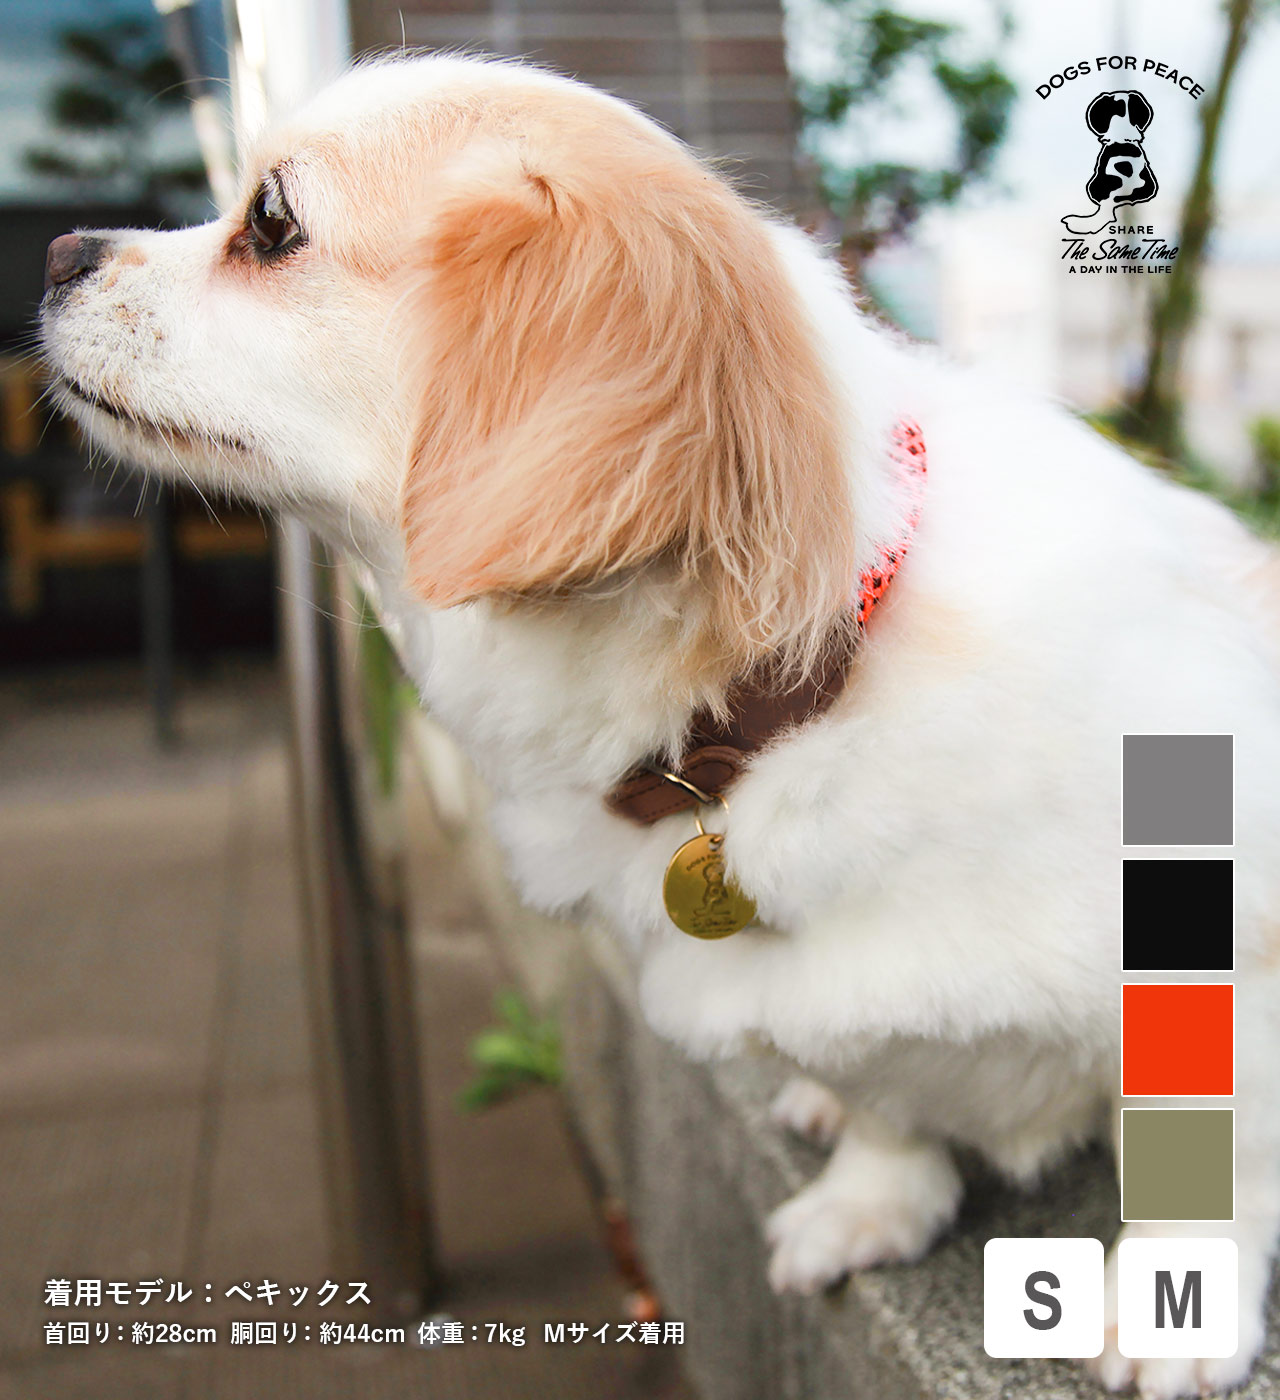 【DOGS】クライミングロープカラー (2サイズ 4カラー) DOGS FOR PEACE / ドッグスフォーピース